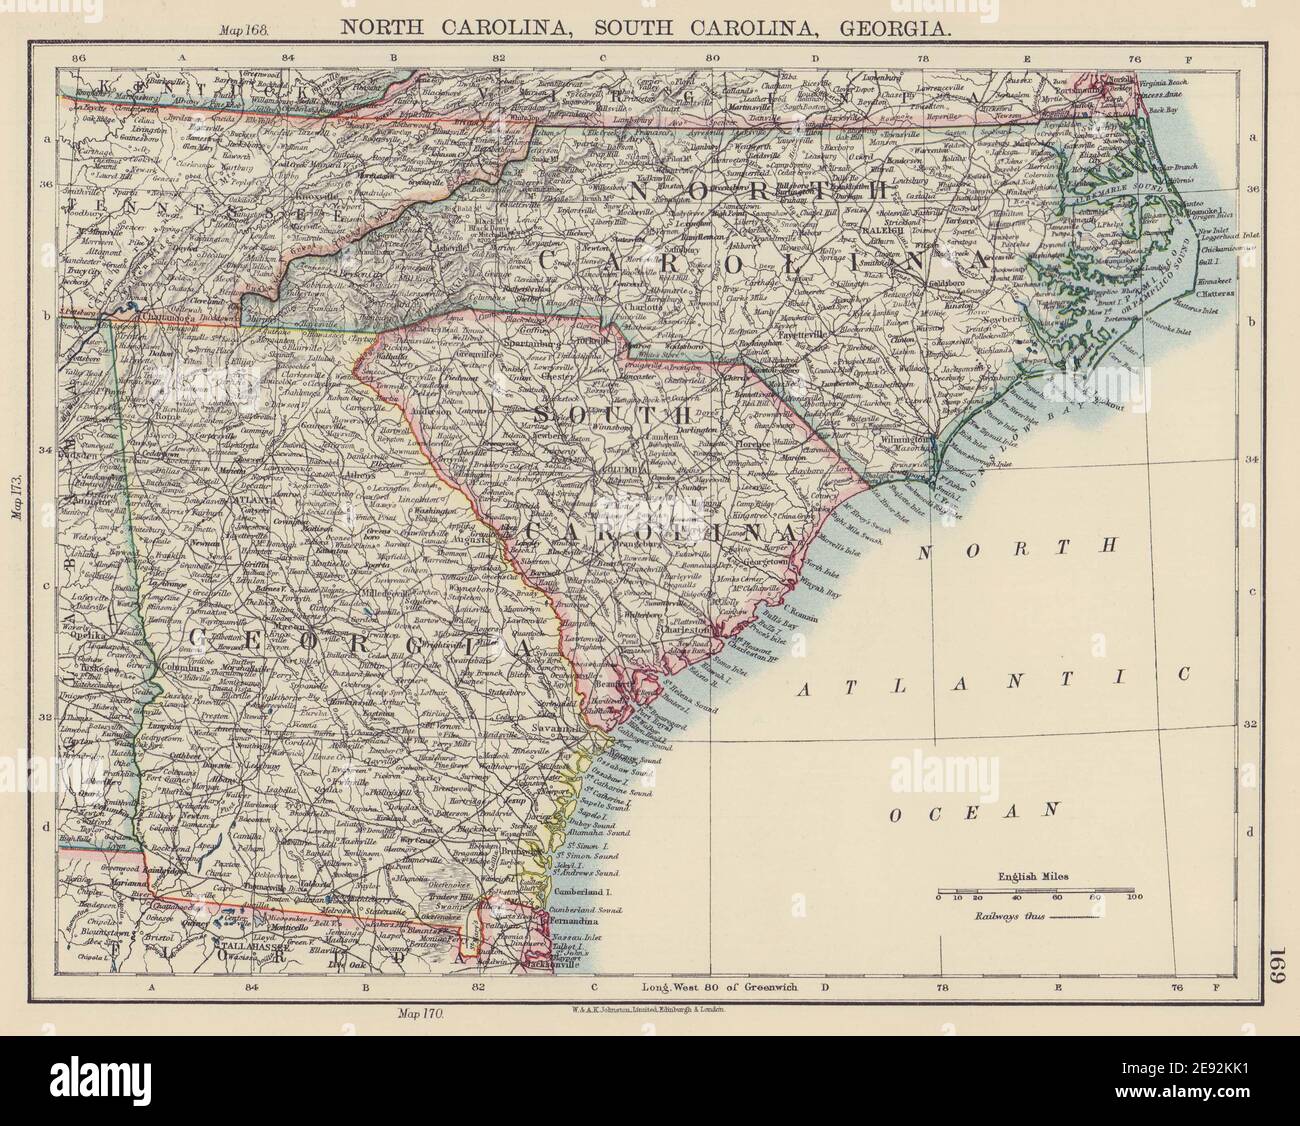 STATI DELL'ATLANTICO MERIDIONALE DEGLI STATI UNITI. Carolina del Nord e del Sud Georgia. JOHNSTON 1901 mappa Foto Stock